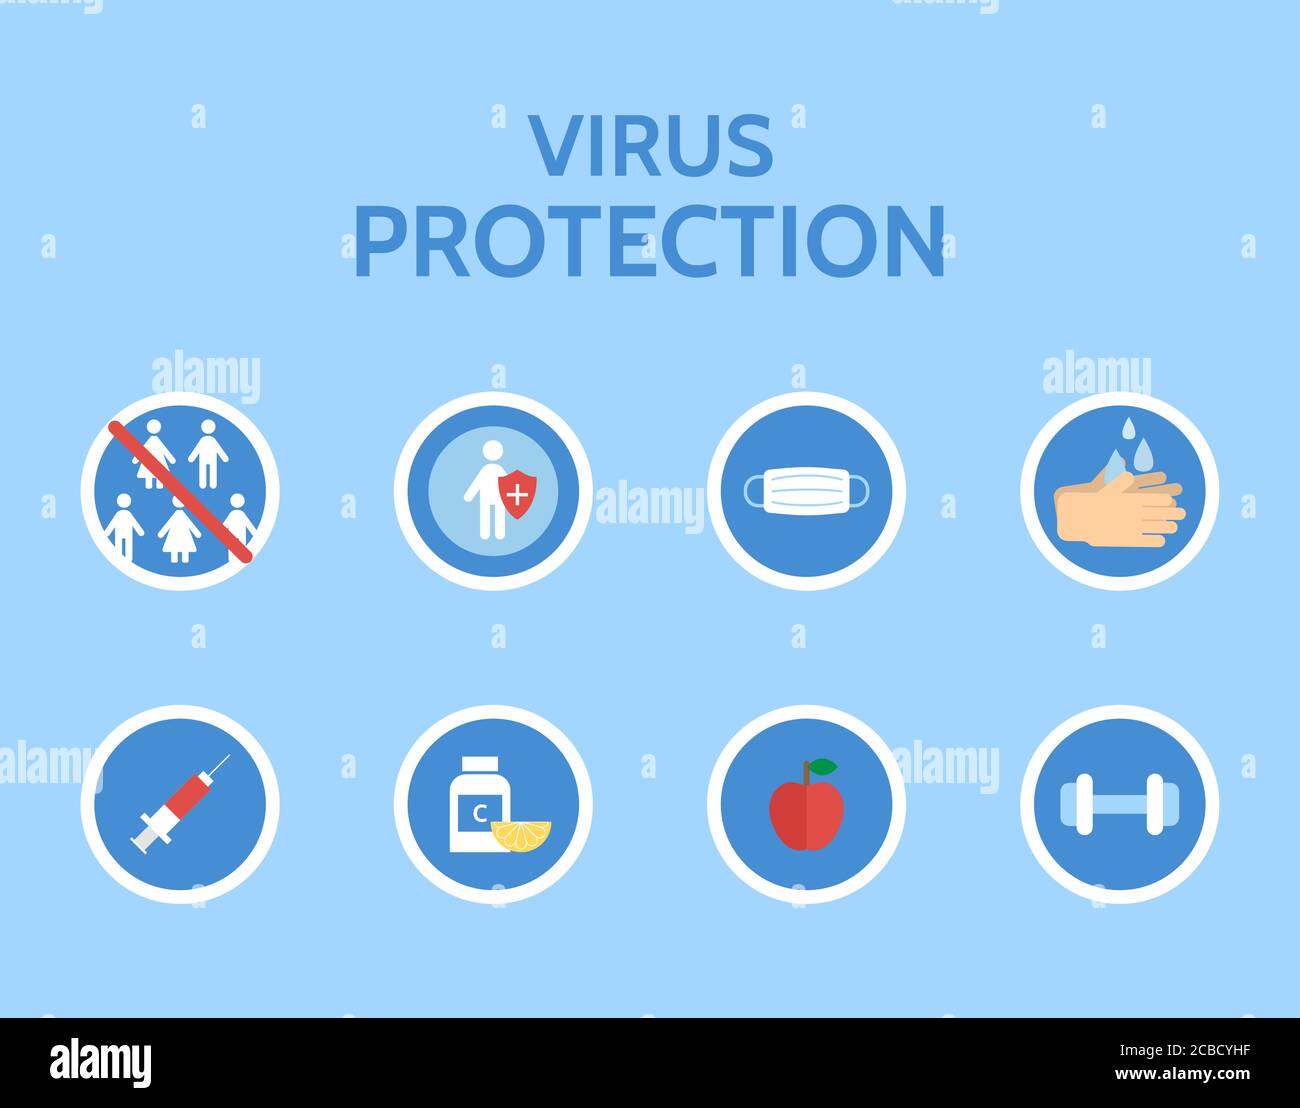 Virus protection infographic. Stop virus. Medical examination. Corona virus prevention. Virus Covid 19-NCP. Danger virus isolated on white background. Stock Vector